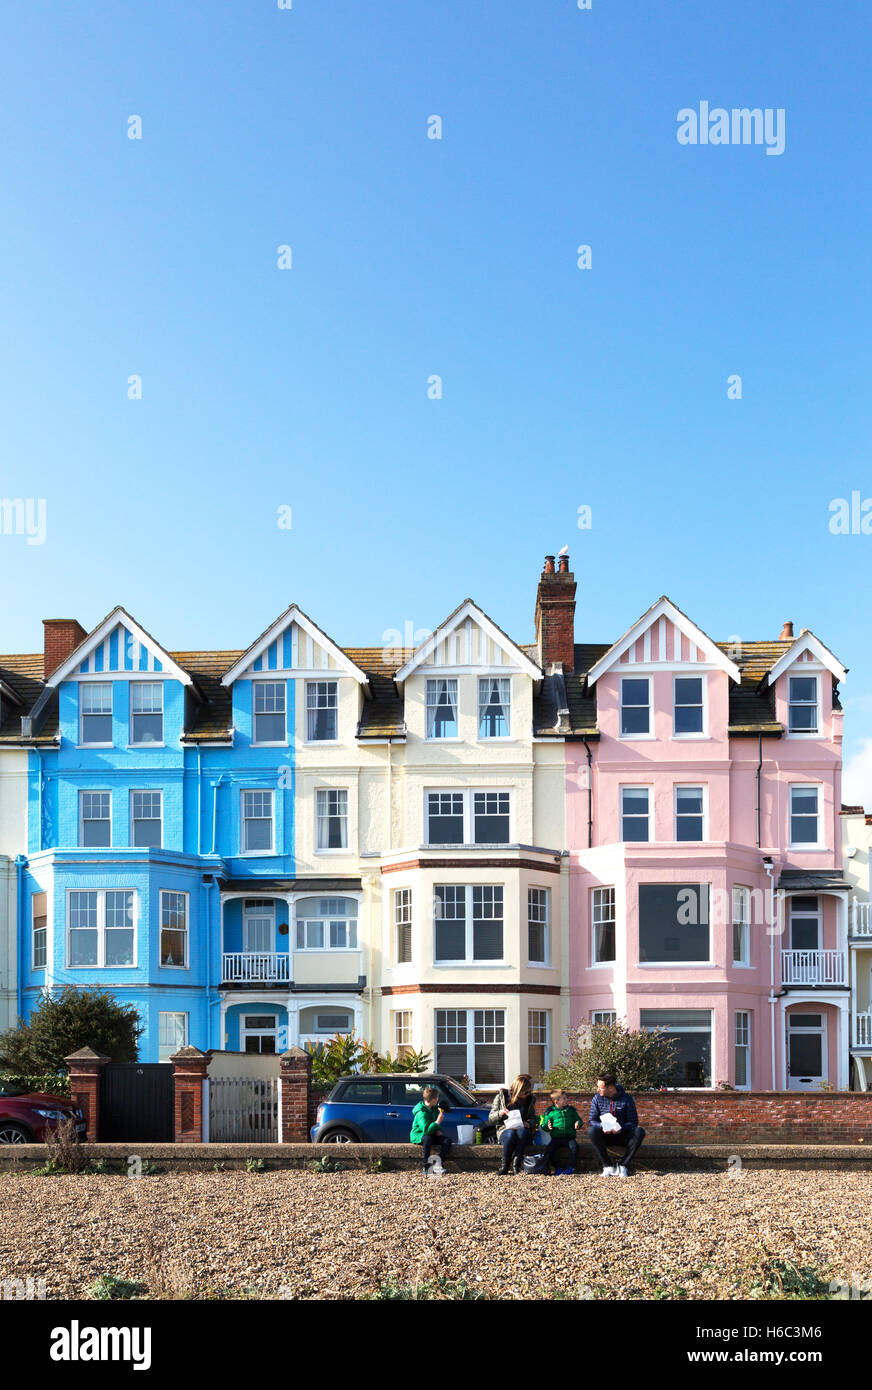 Maisons colorées du Royaume-Uni; maisons victoriennes en terrasse colorées sur le front de mer d'Aldeburgh en été, Aldeburgh, Suffolk Angleterre Royaume-Uni Banque D'Images